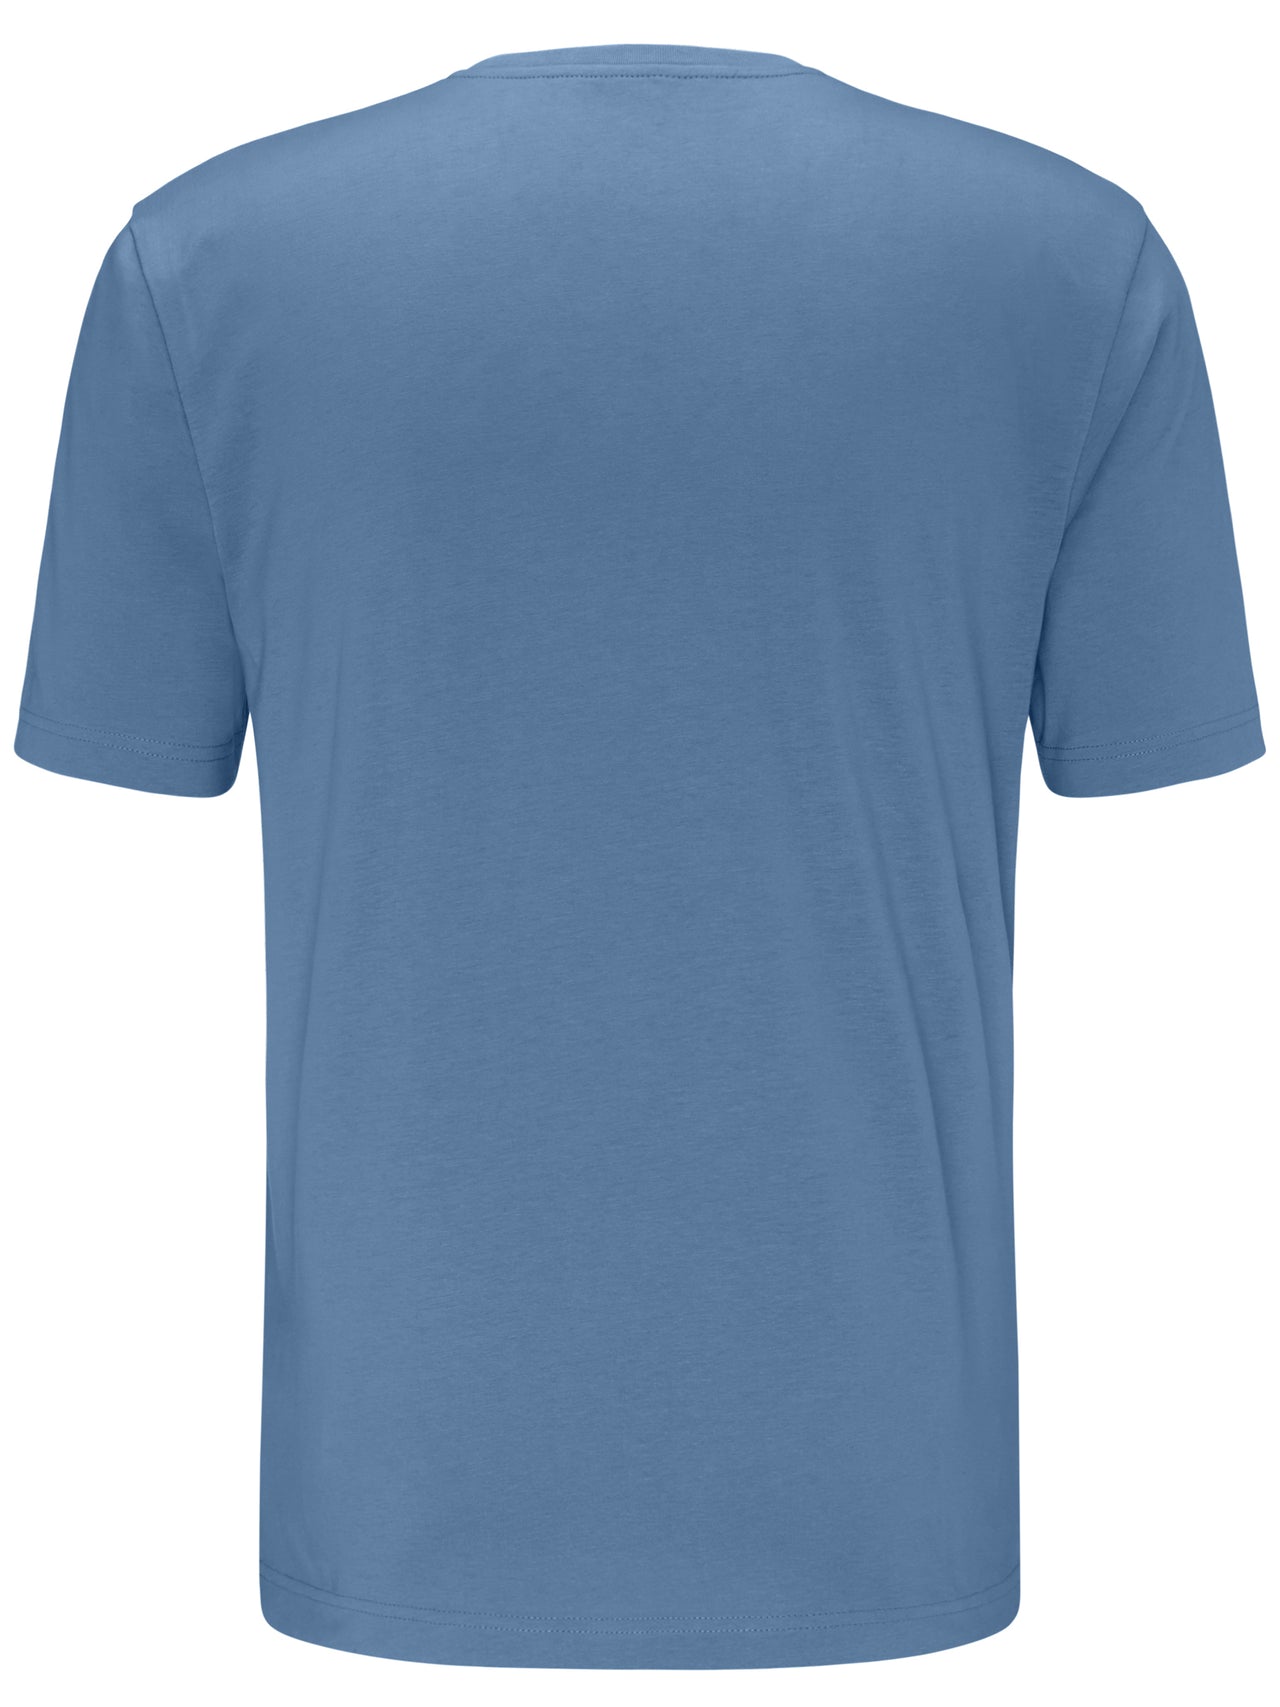 Fynch Hatton Pacific Blue Round Neck T-shirt